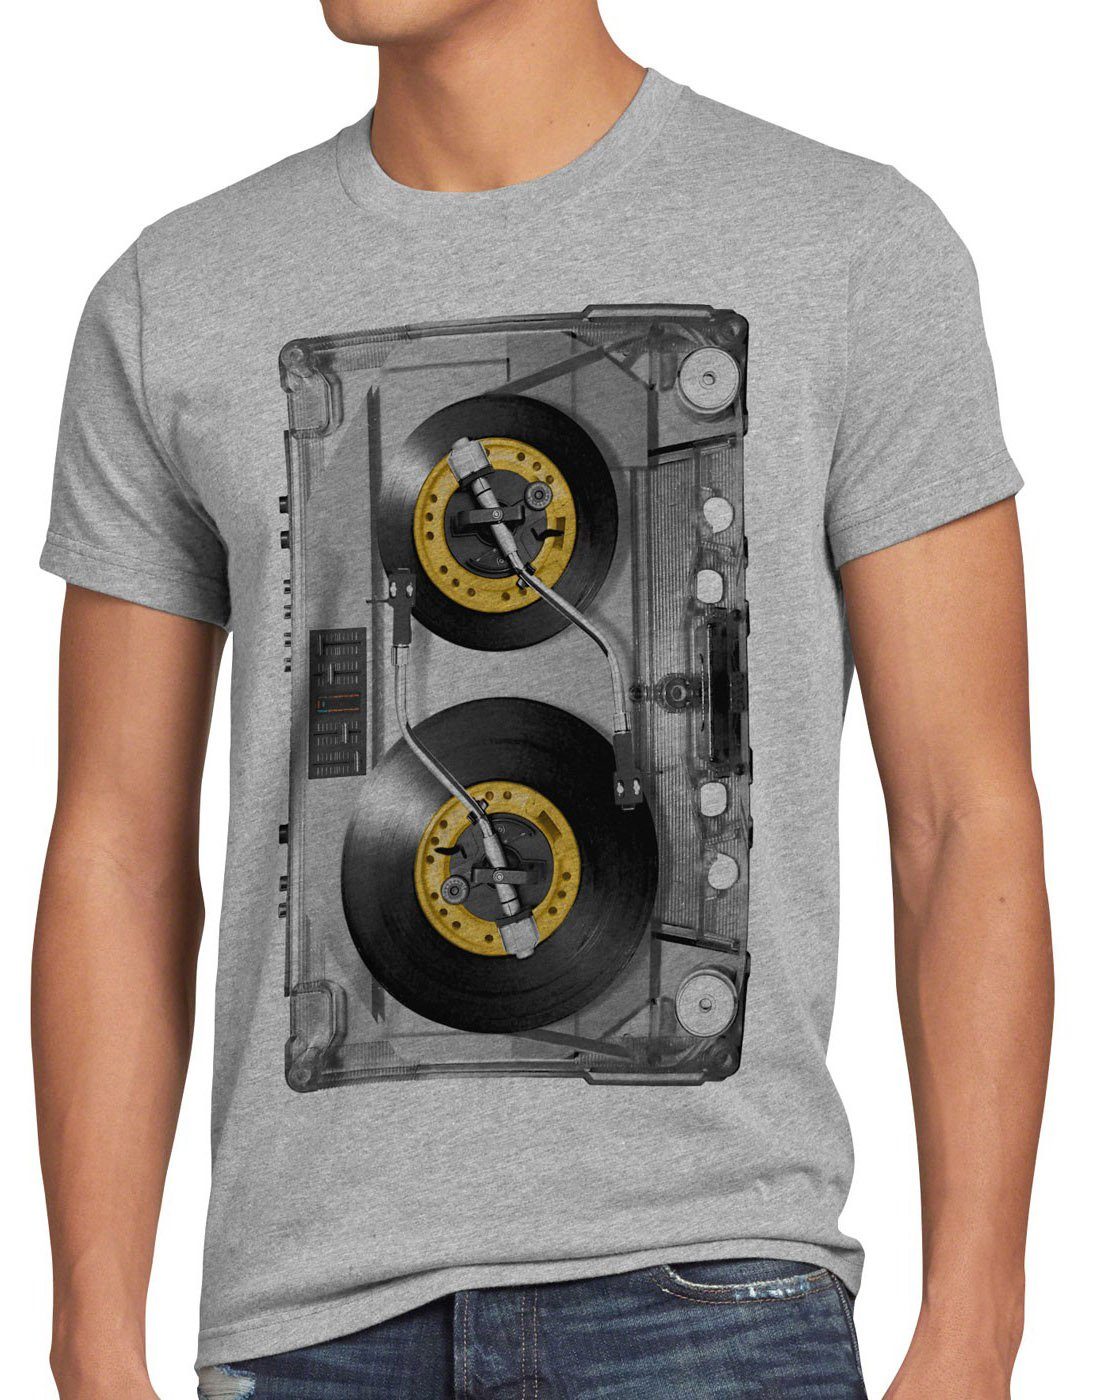 80er CD analog retro Tape musik Herren T-Shirt 90er style3 kassette disco mc DJ grau Print-Shirt meliert vinyl